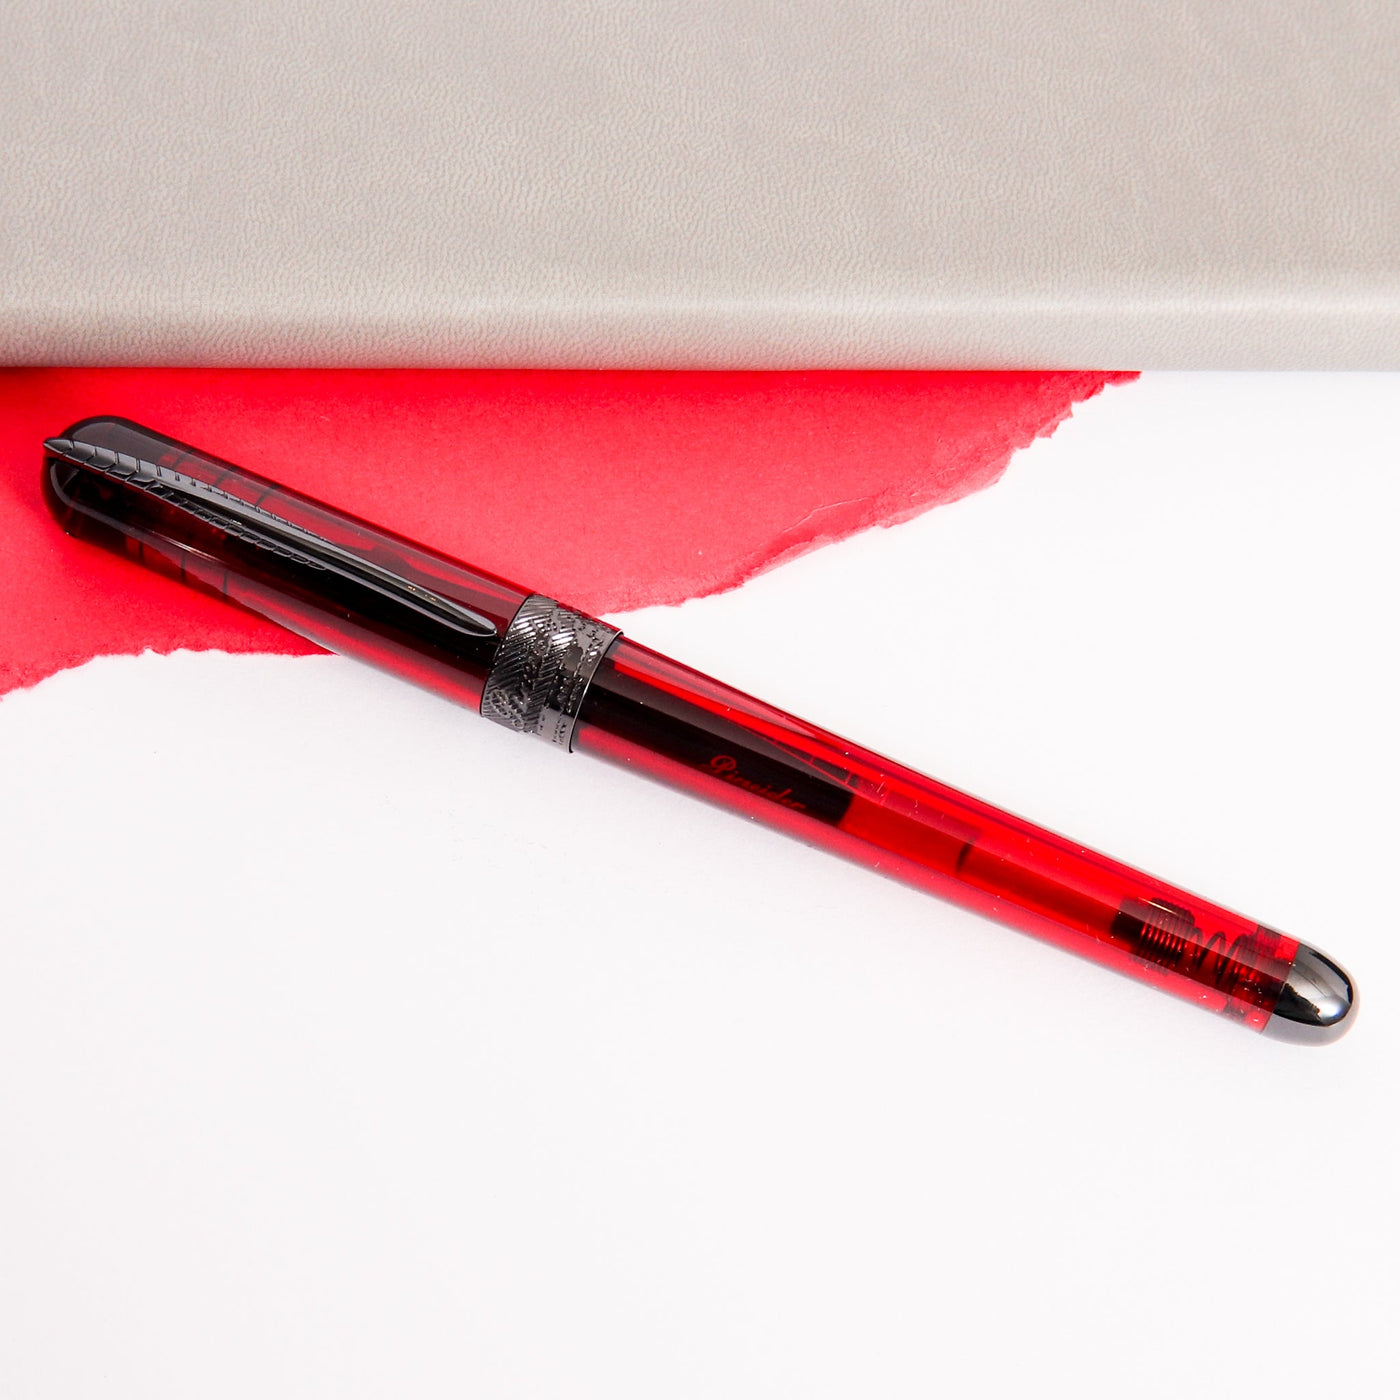 Pineider Avatar UR Demo Black Wine Red Rollerball Pen Capped